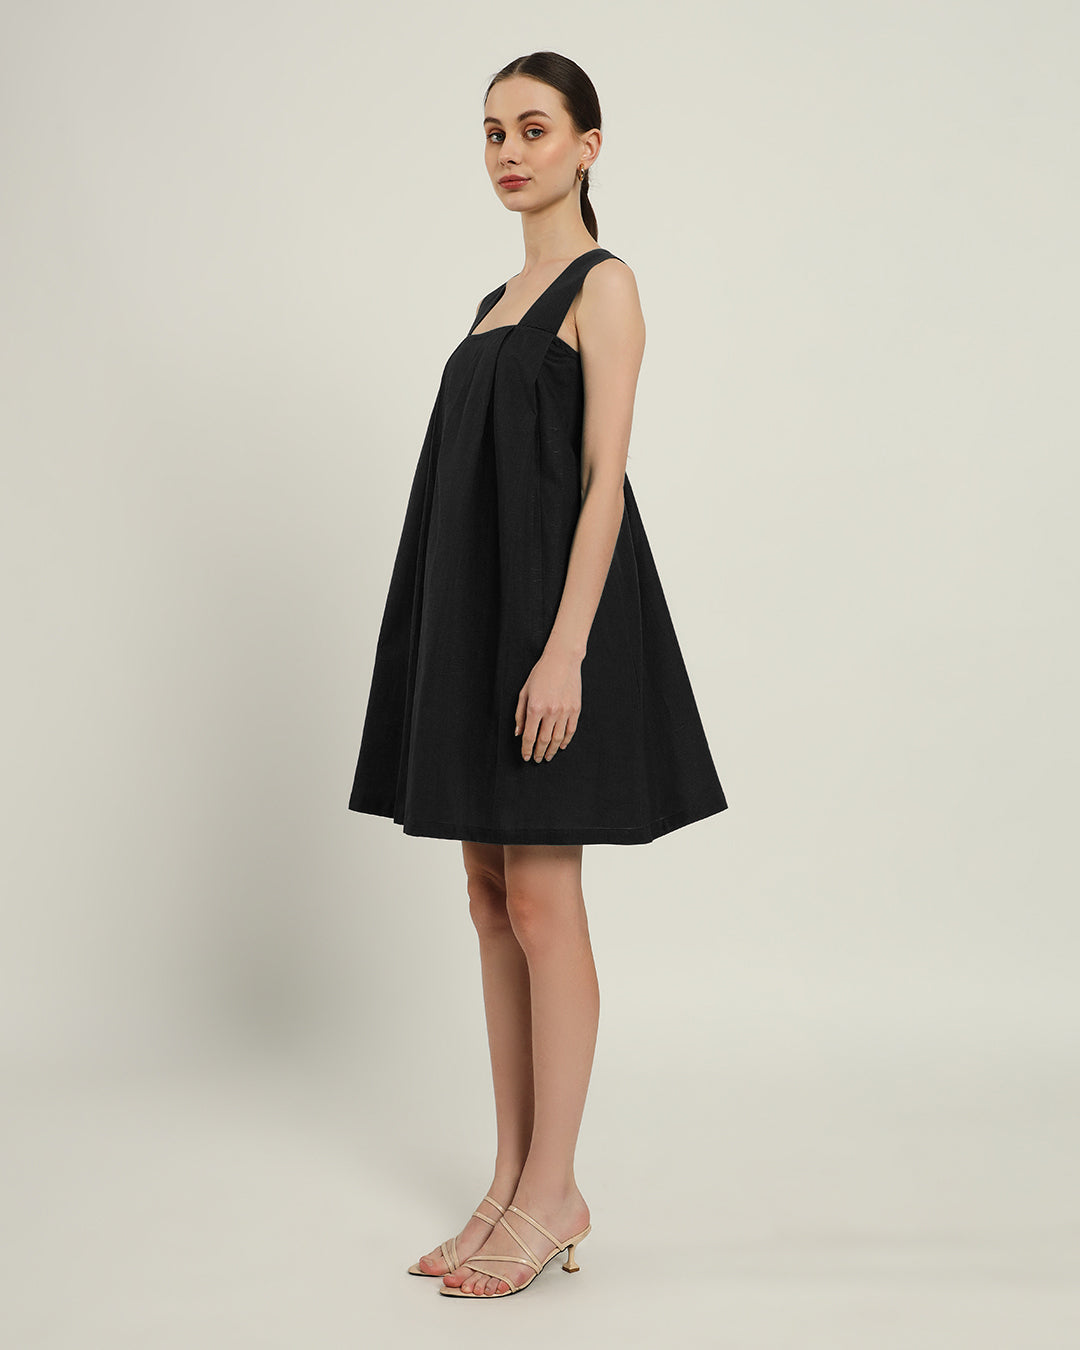 The Larissa Noir Cotton Dress